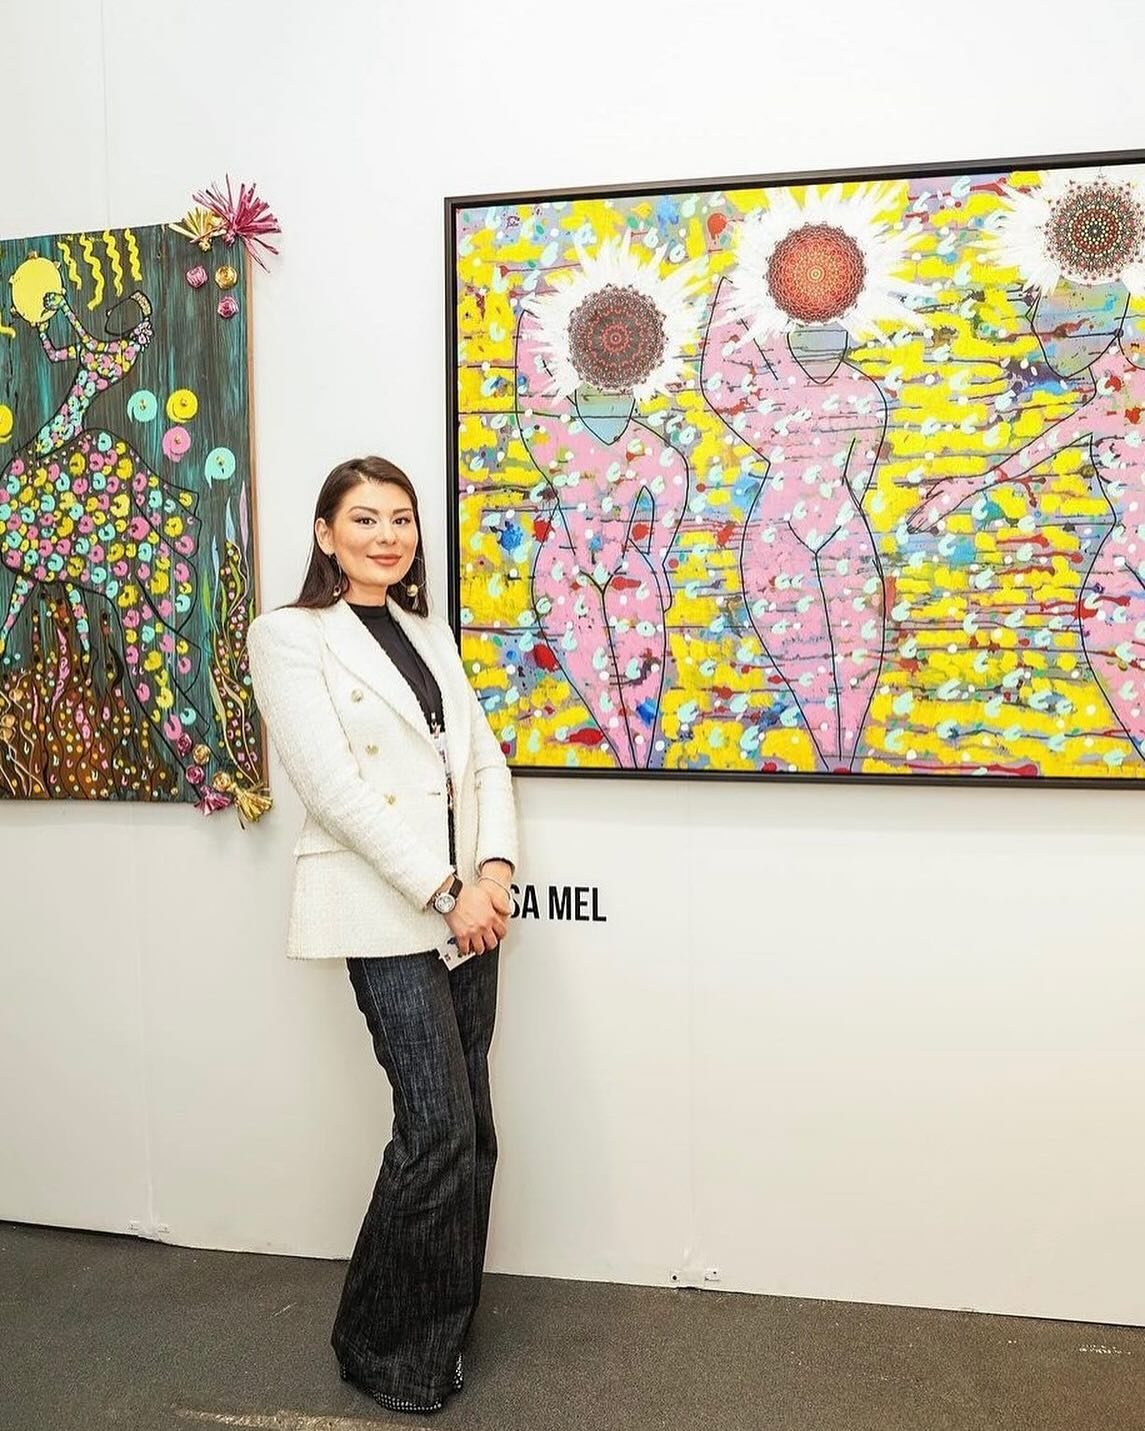 Artist Lissa Mel shows her work in NYC 🗽